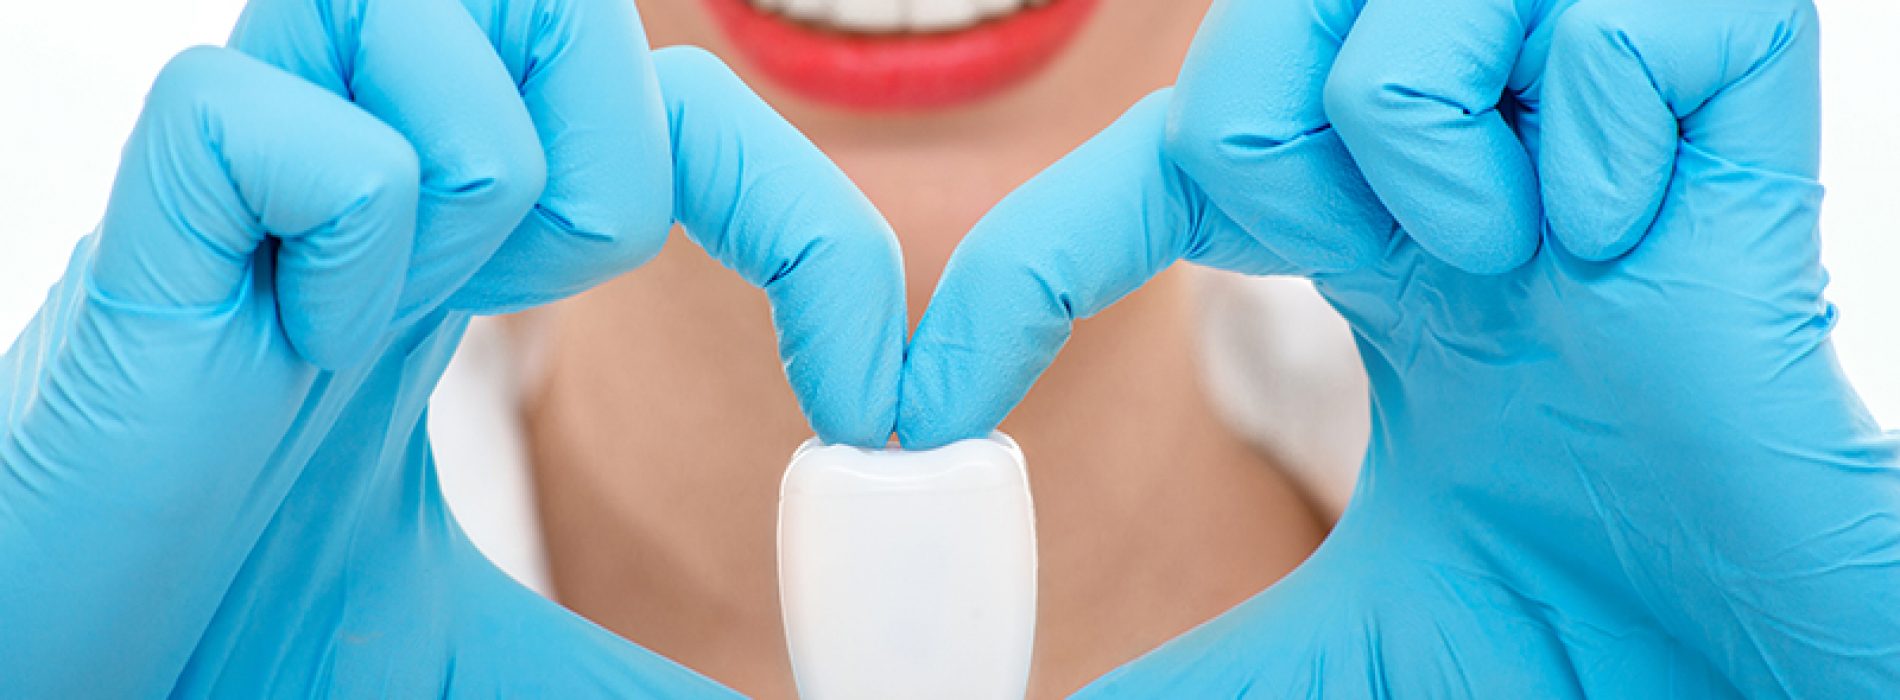 Het verband tussen tandvleesaandoeningen, hypertensie en hartaanvallen